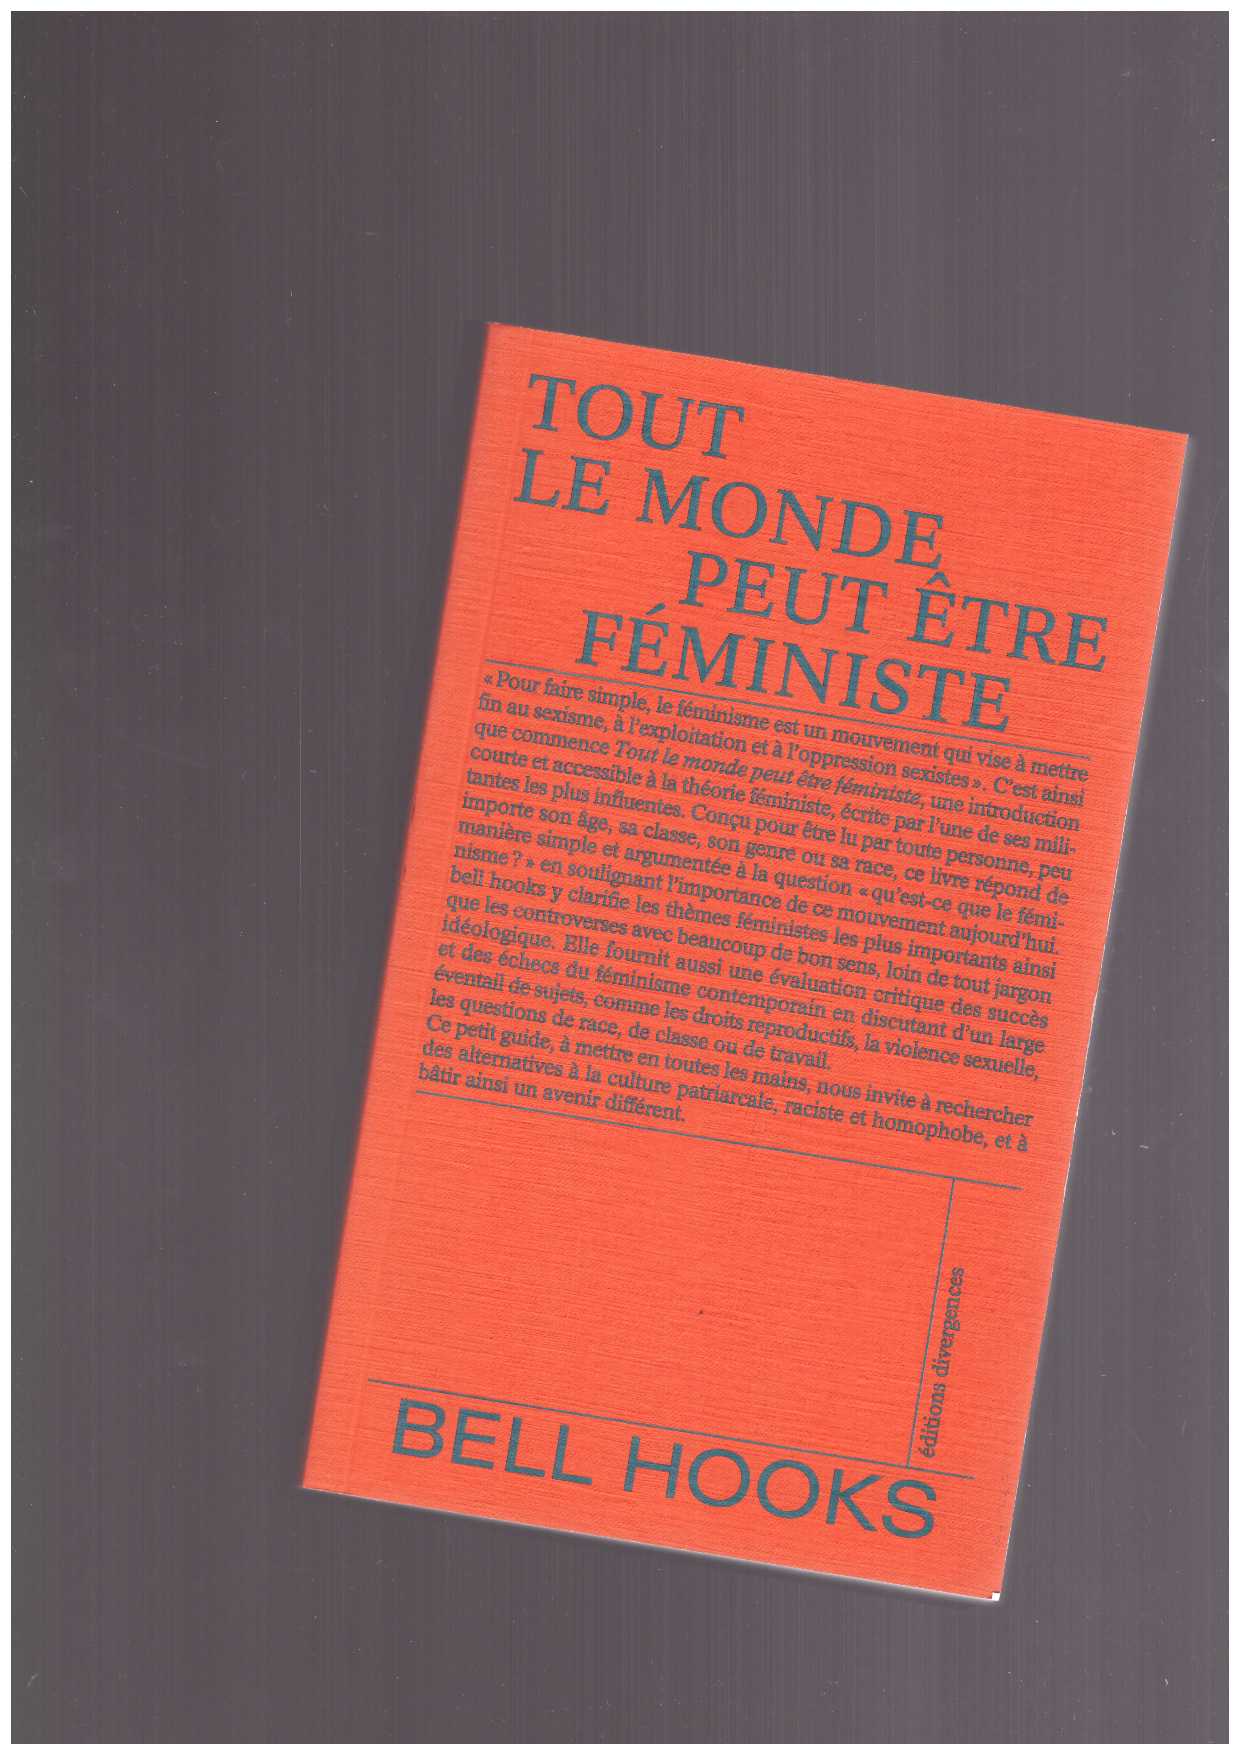 hooks, bell - Tout le monde peut être féministe